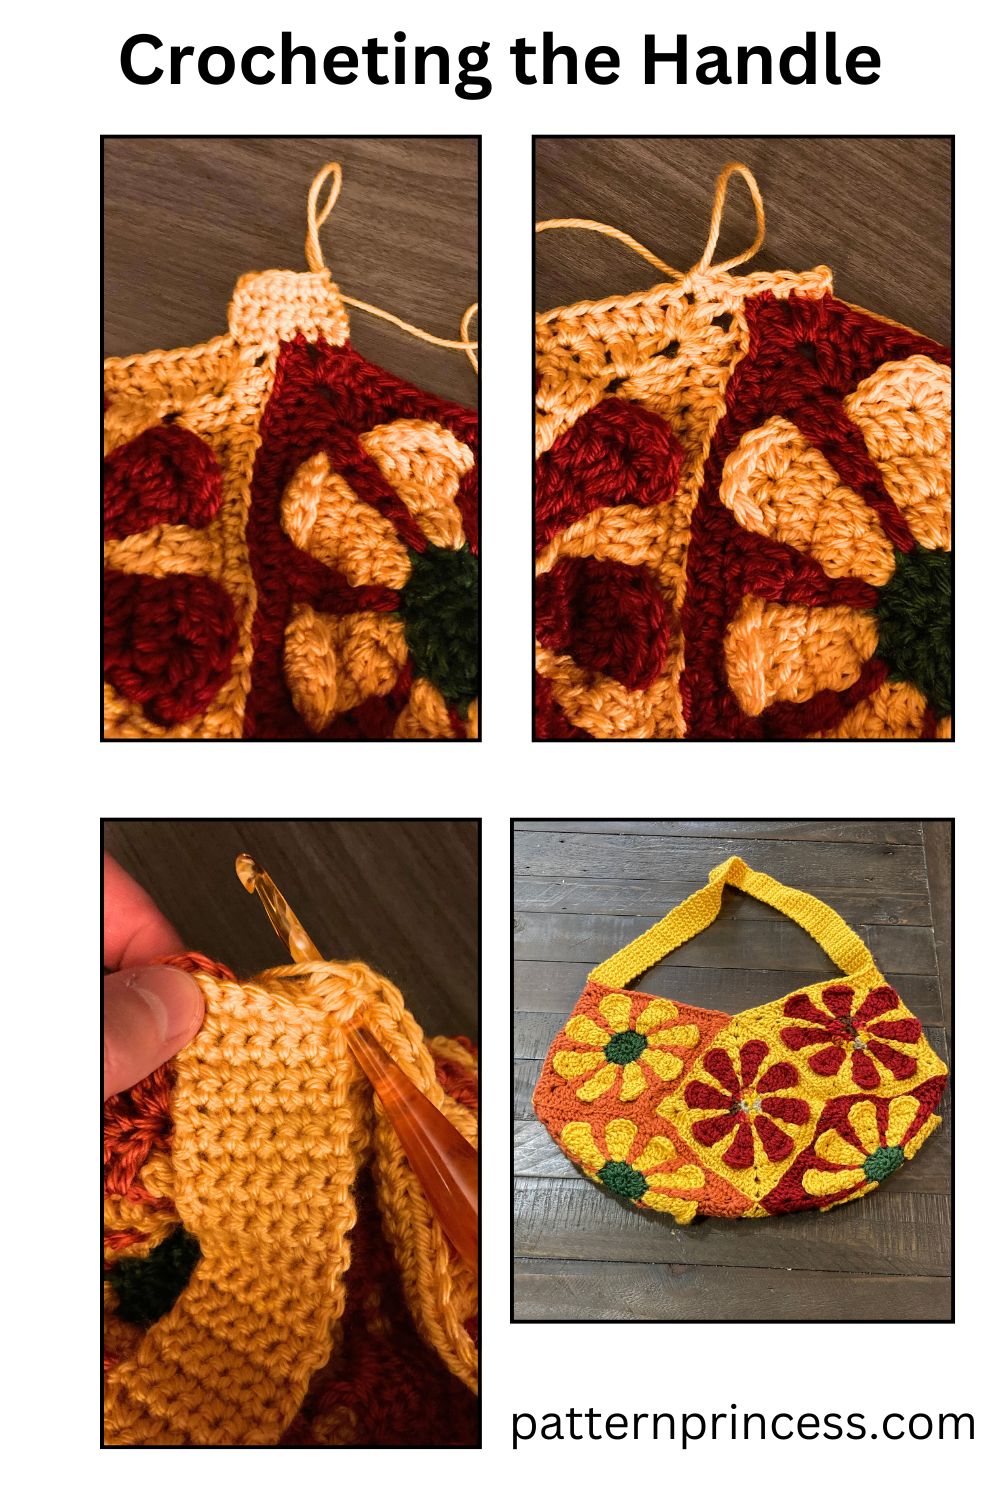 Crocheting the Handle